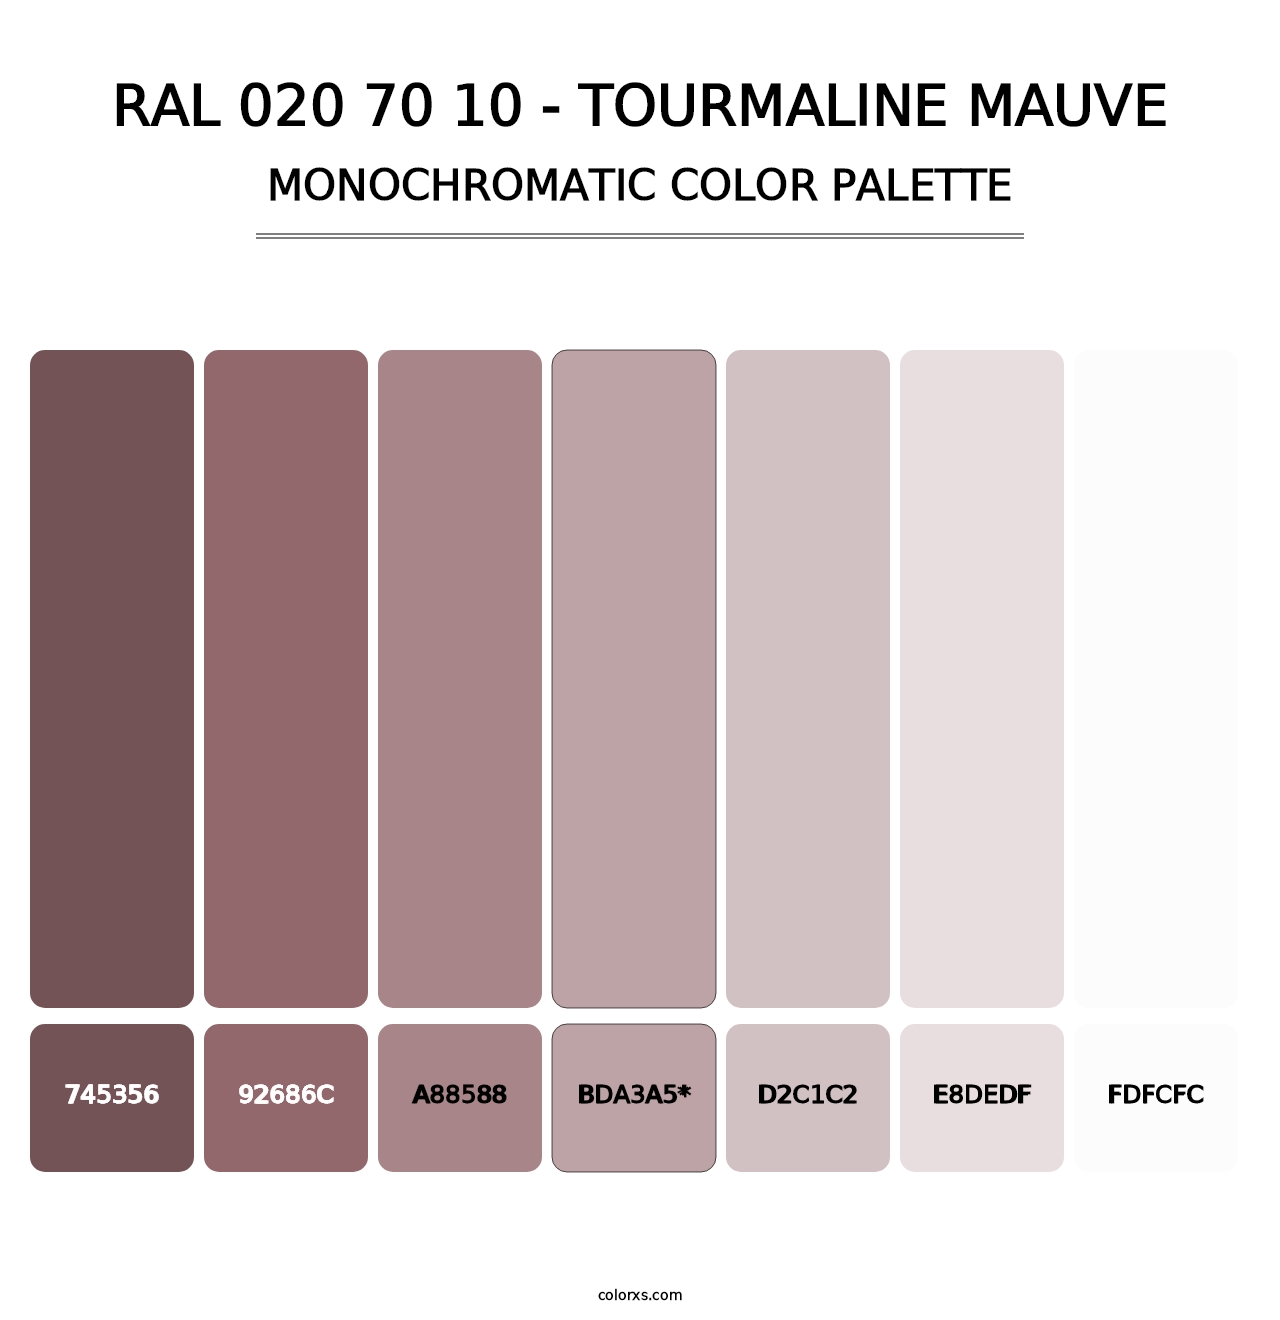 RAL 020 70 10 - Tourmaline Mauve - Monochromatic Color Palette